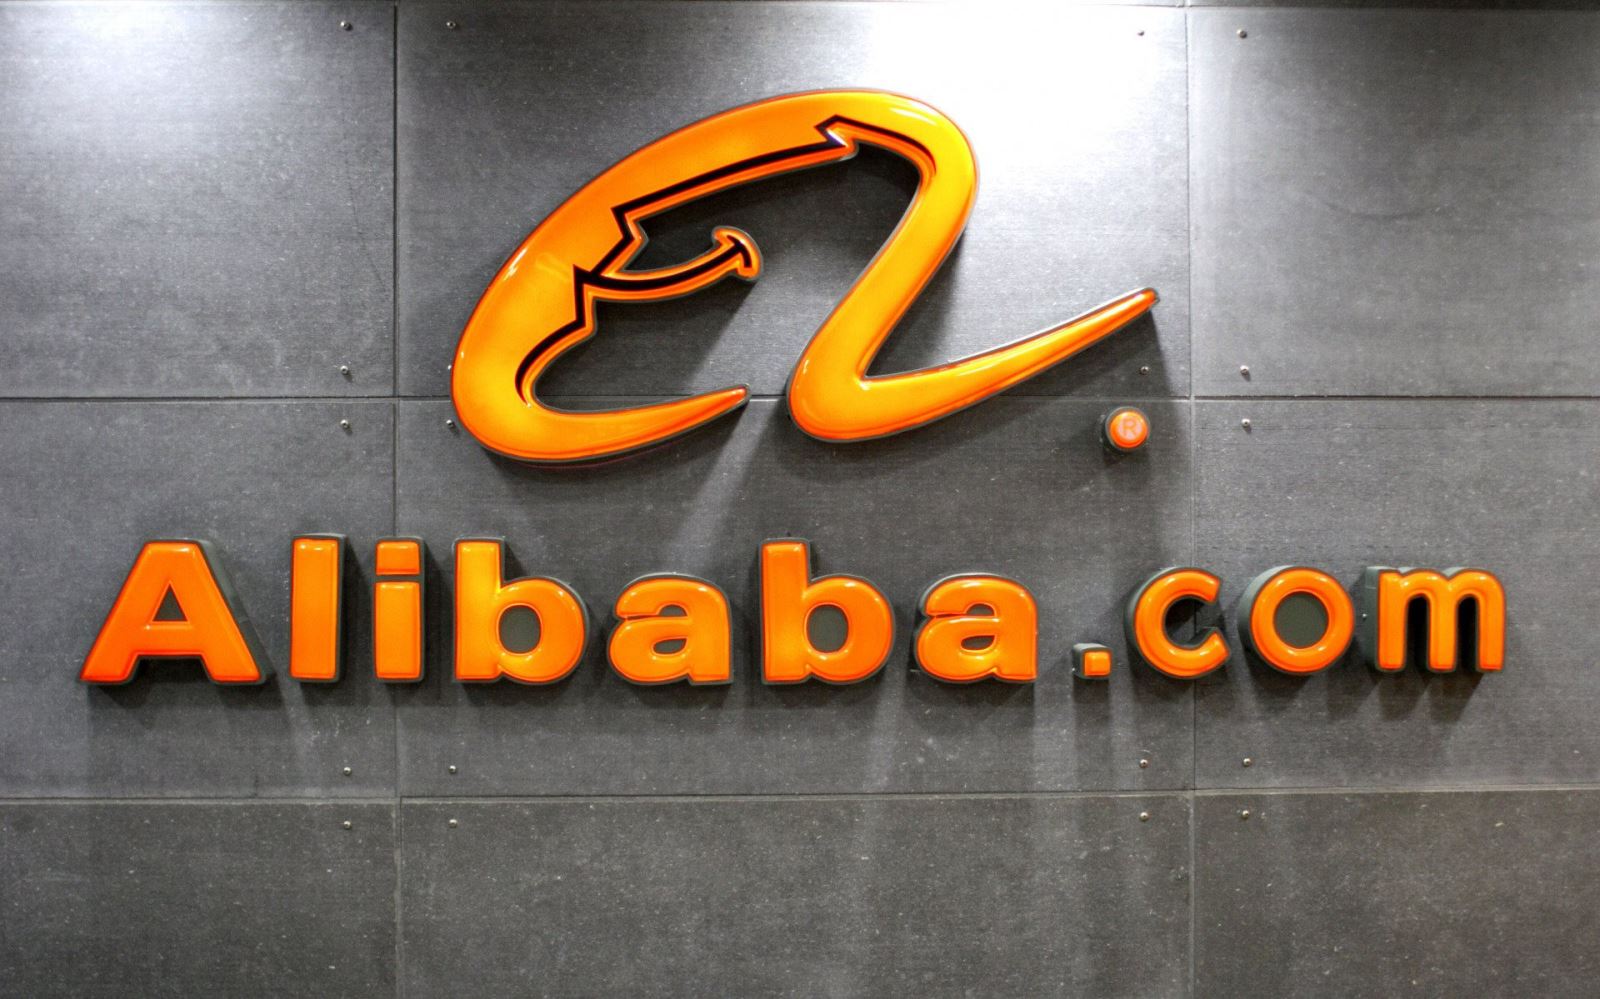 Nhận định thị trường Trung Quốc không thuận lợi, Alibaba hủy kế hoạch IPO Cainiao